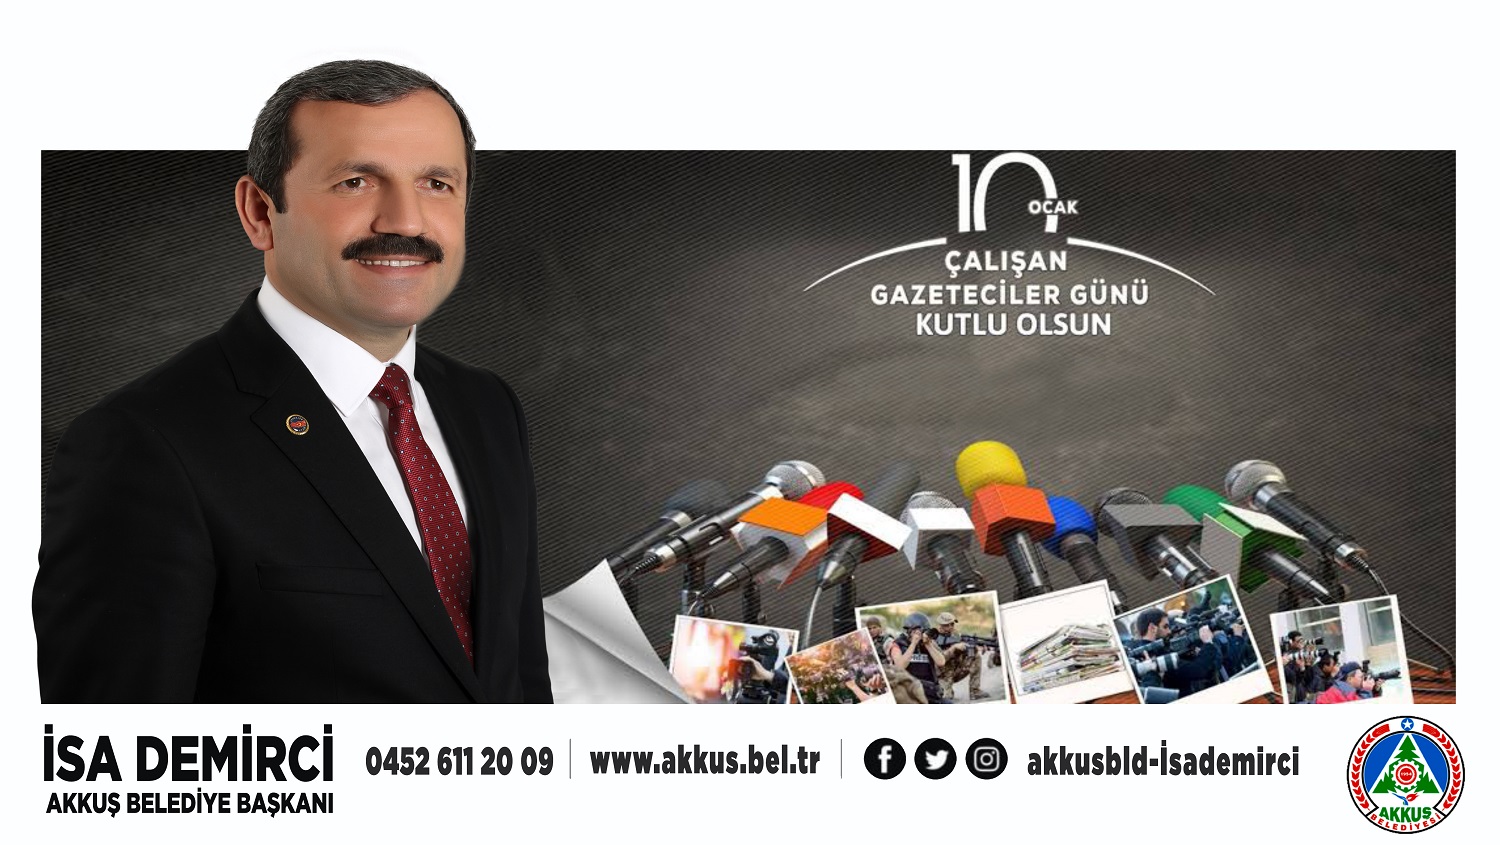 Başkan Demirci’nin 10 Ocak Çalışan Gazeteciler Günü Mesajı